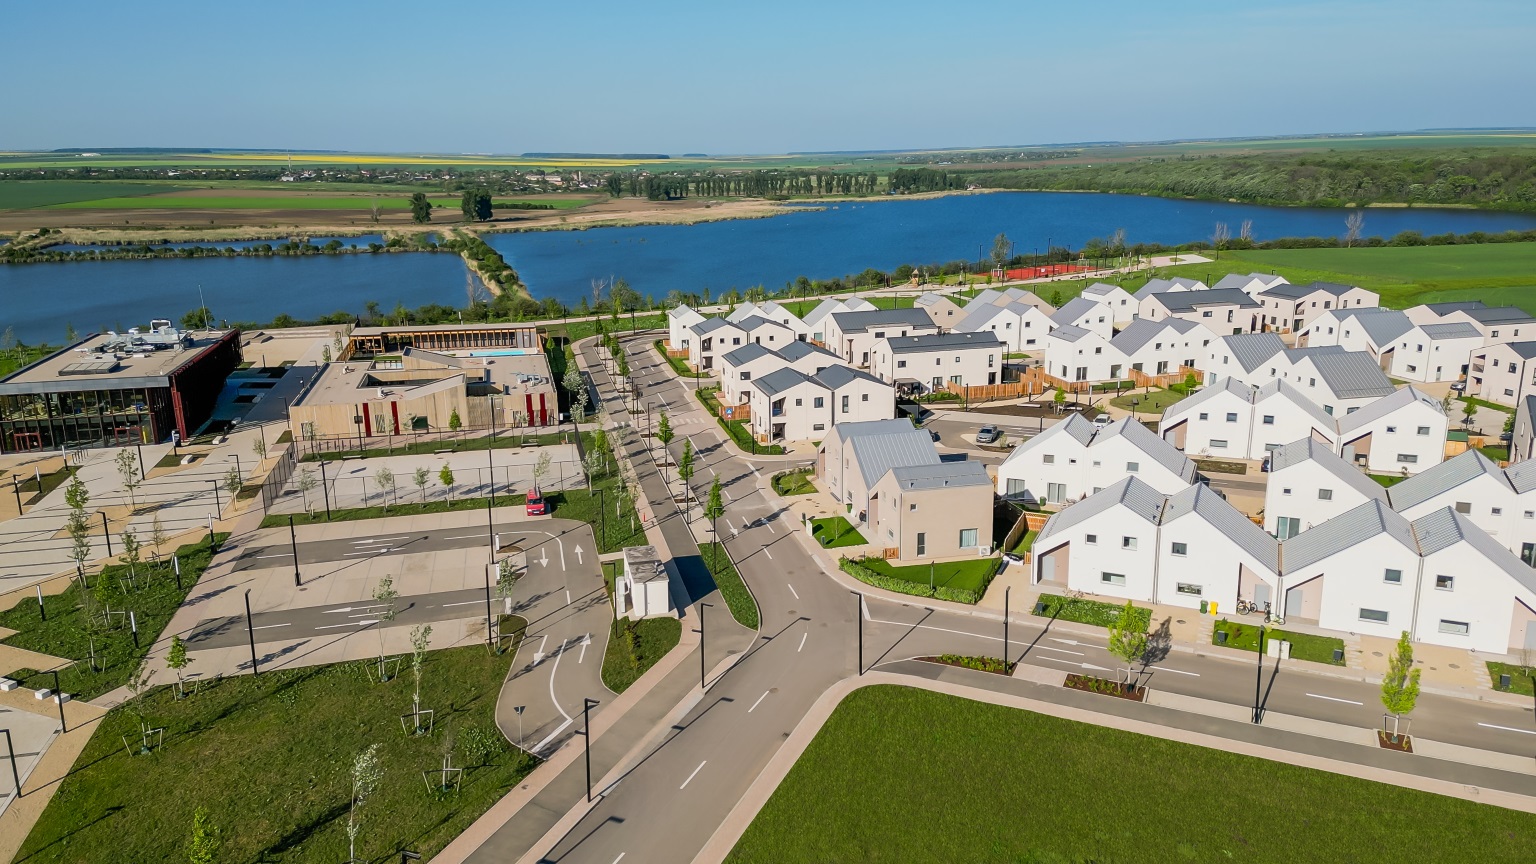 Liziera de Lac, ansamblul imobiliar dezvoltat de Liebrecht & wooD, continuă să își extindă facilitățile prin inaugurarea clădirii Agora